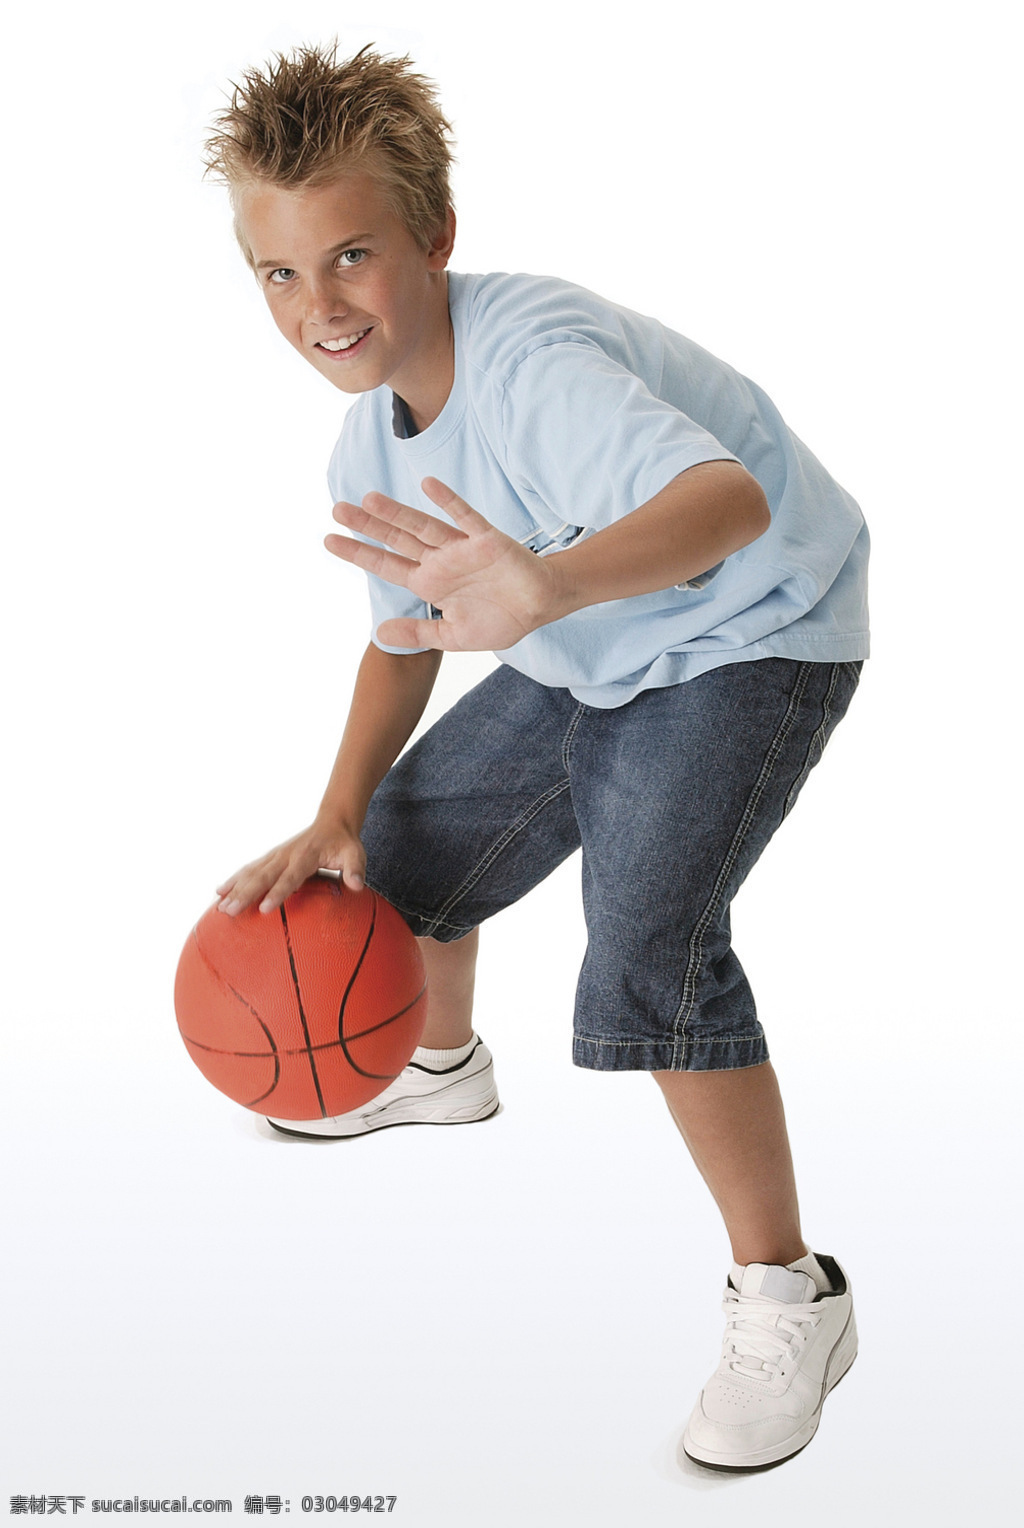 打球 儿童幼儿 高兴 孩子 篮球 人物图库 玩 孩子玩篮球 玩球 阻挡 外国孩子 外国篮球 psd源文件